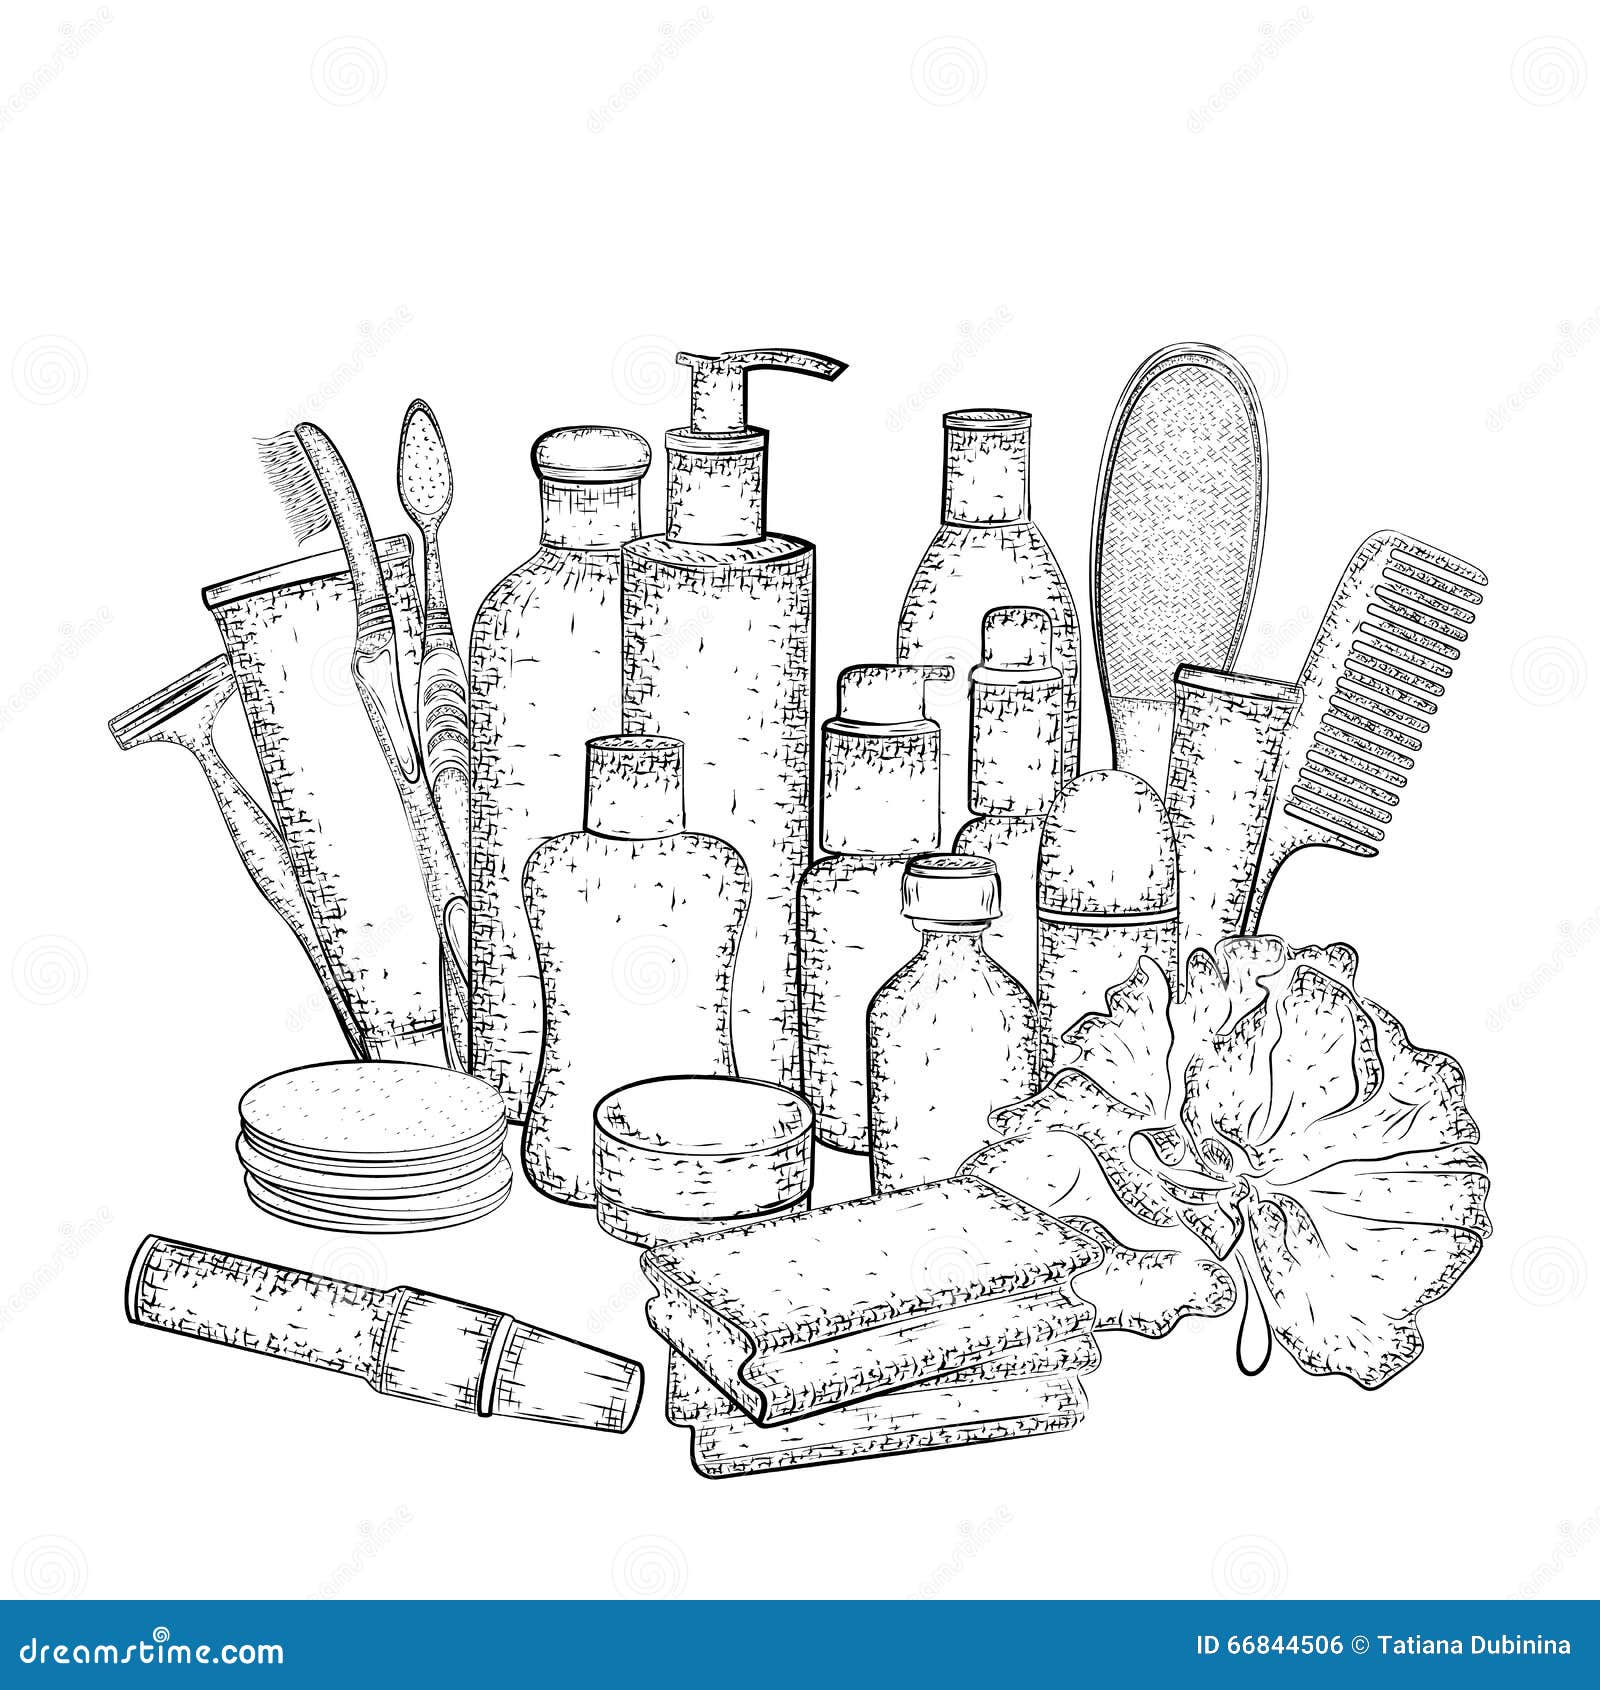 Hygienesatz Hand gezeichnete Sammlung Produkte für Körperpflege Ausführliche Skizze von Elementen für das Bad oder Dusche lokalisiert auf weißem Hintergrund Schwarzweiss-Bleistift- oder Tintenzeichnung